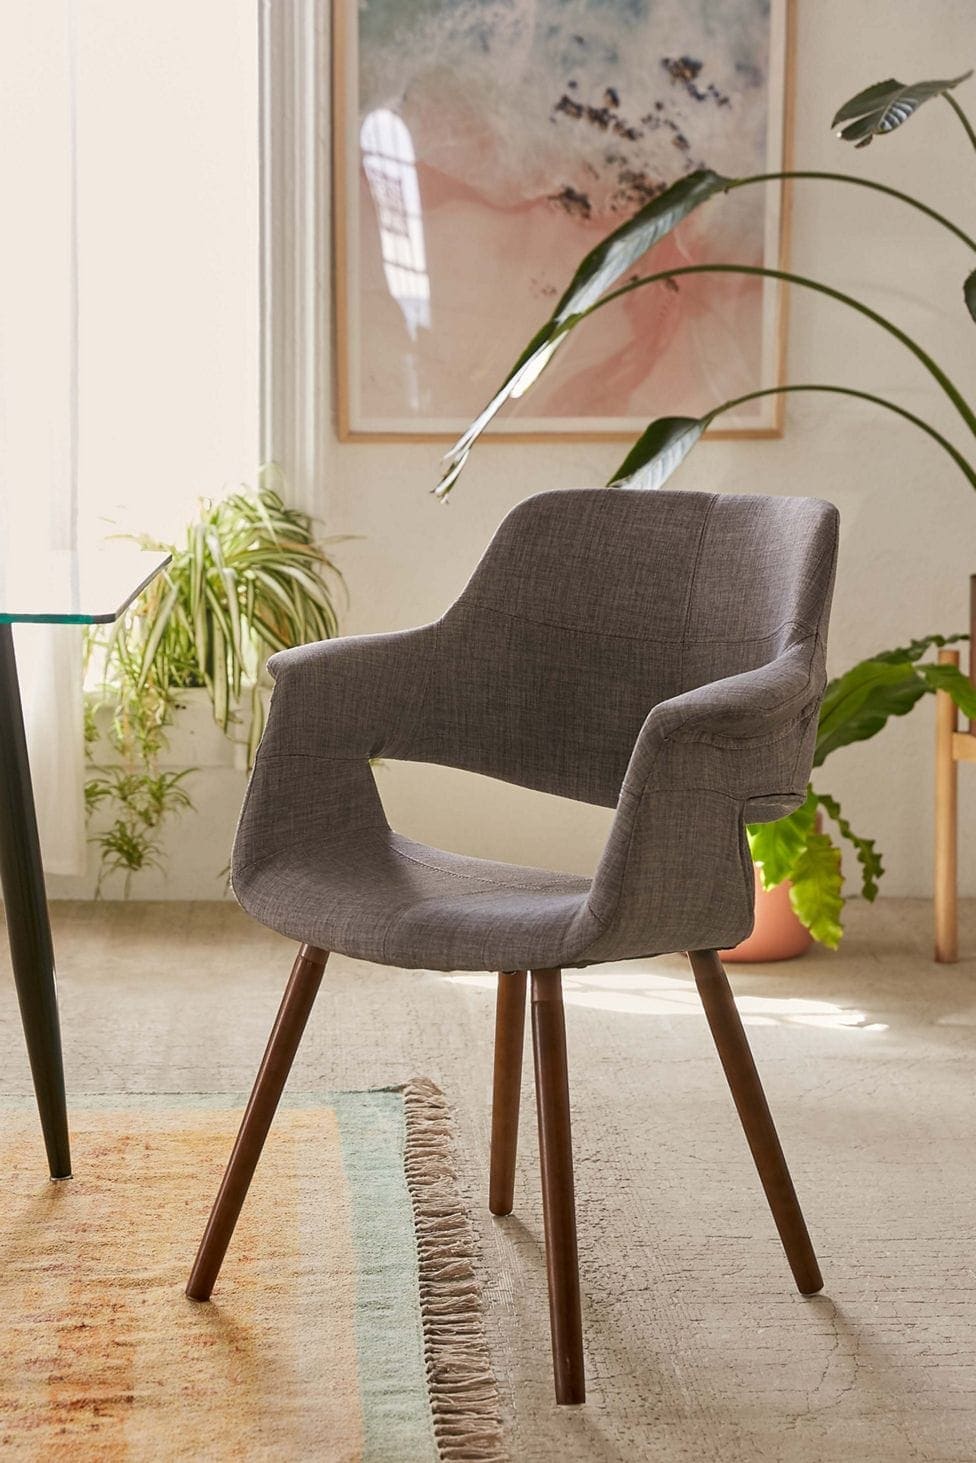 Agregue estilo a su habitación con esta elegante silla moderna de mediados de siglo